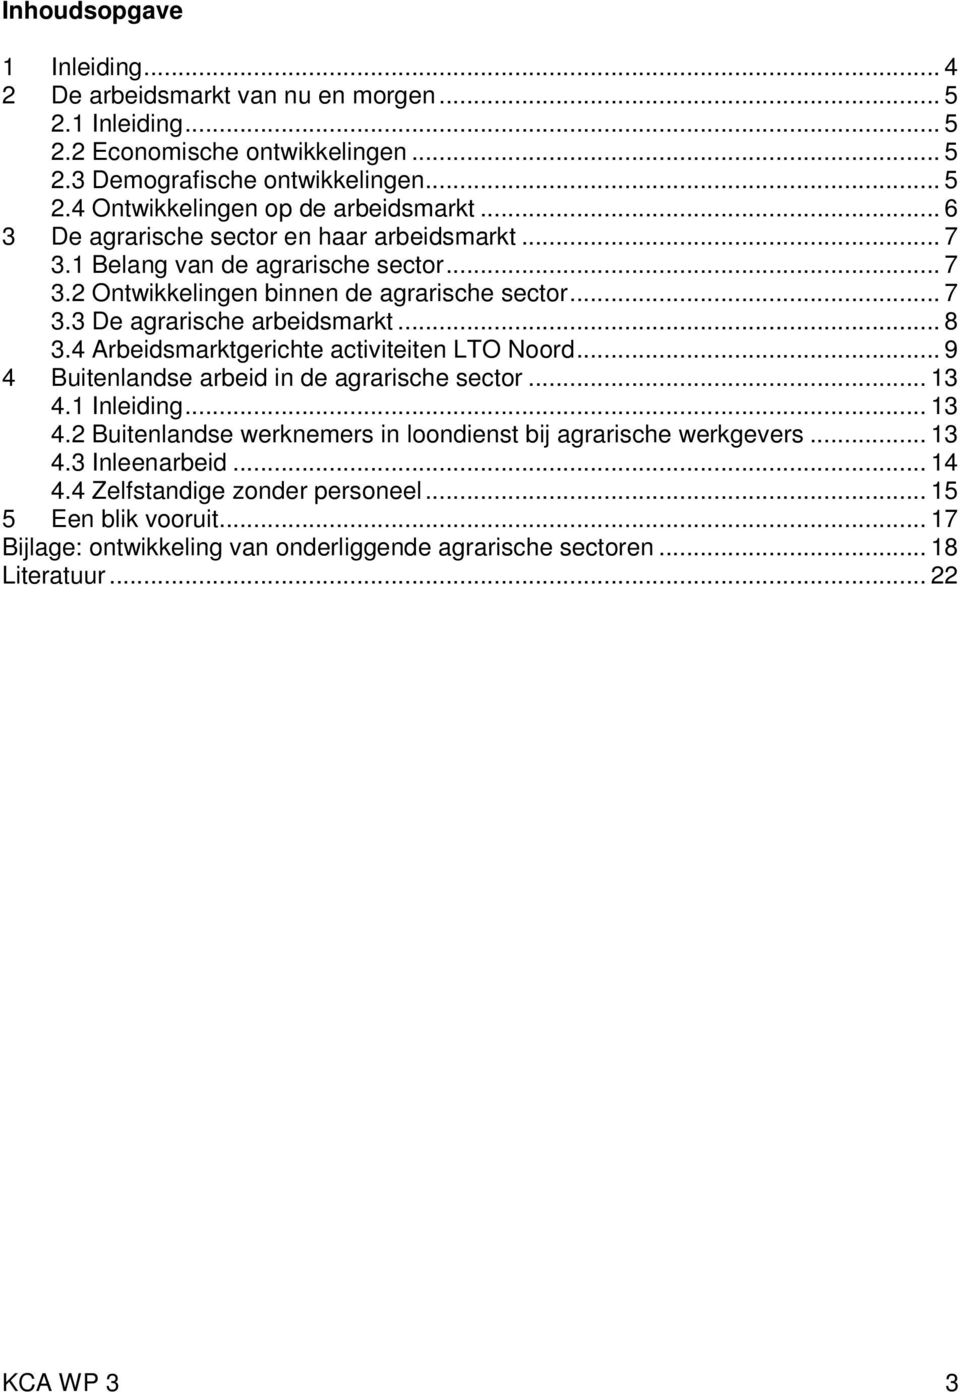 4 Arbeidsmarktgerichte activiteiten LTO Noord... 9 4 Buitenlandse arbeid in de agrarische sector... 13 4.1 Inleiding... 13 4.2 Buitenlandse werknemers in loondienst bij agrarische werkgevers.